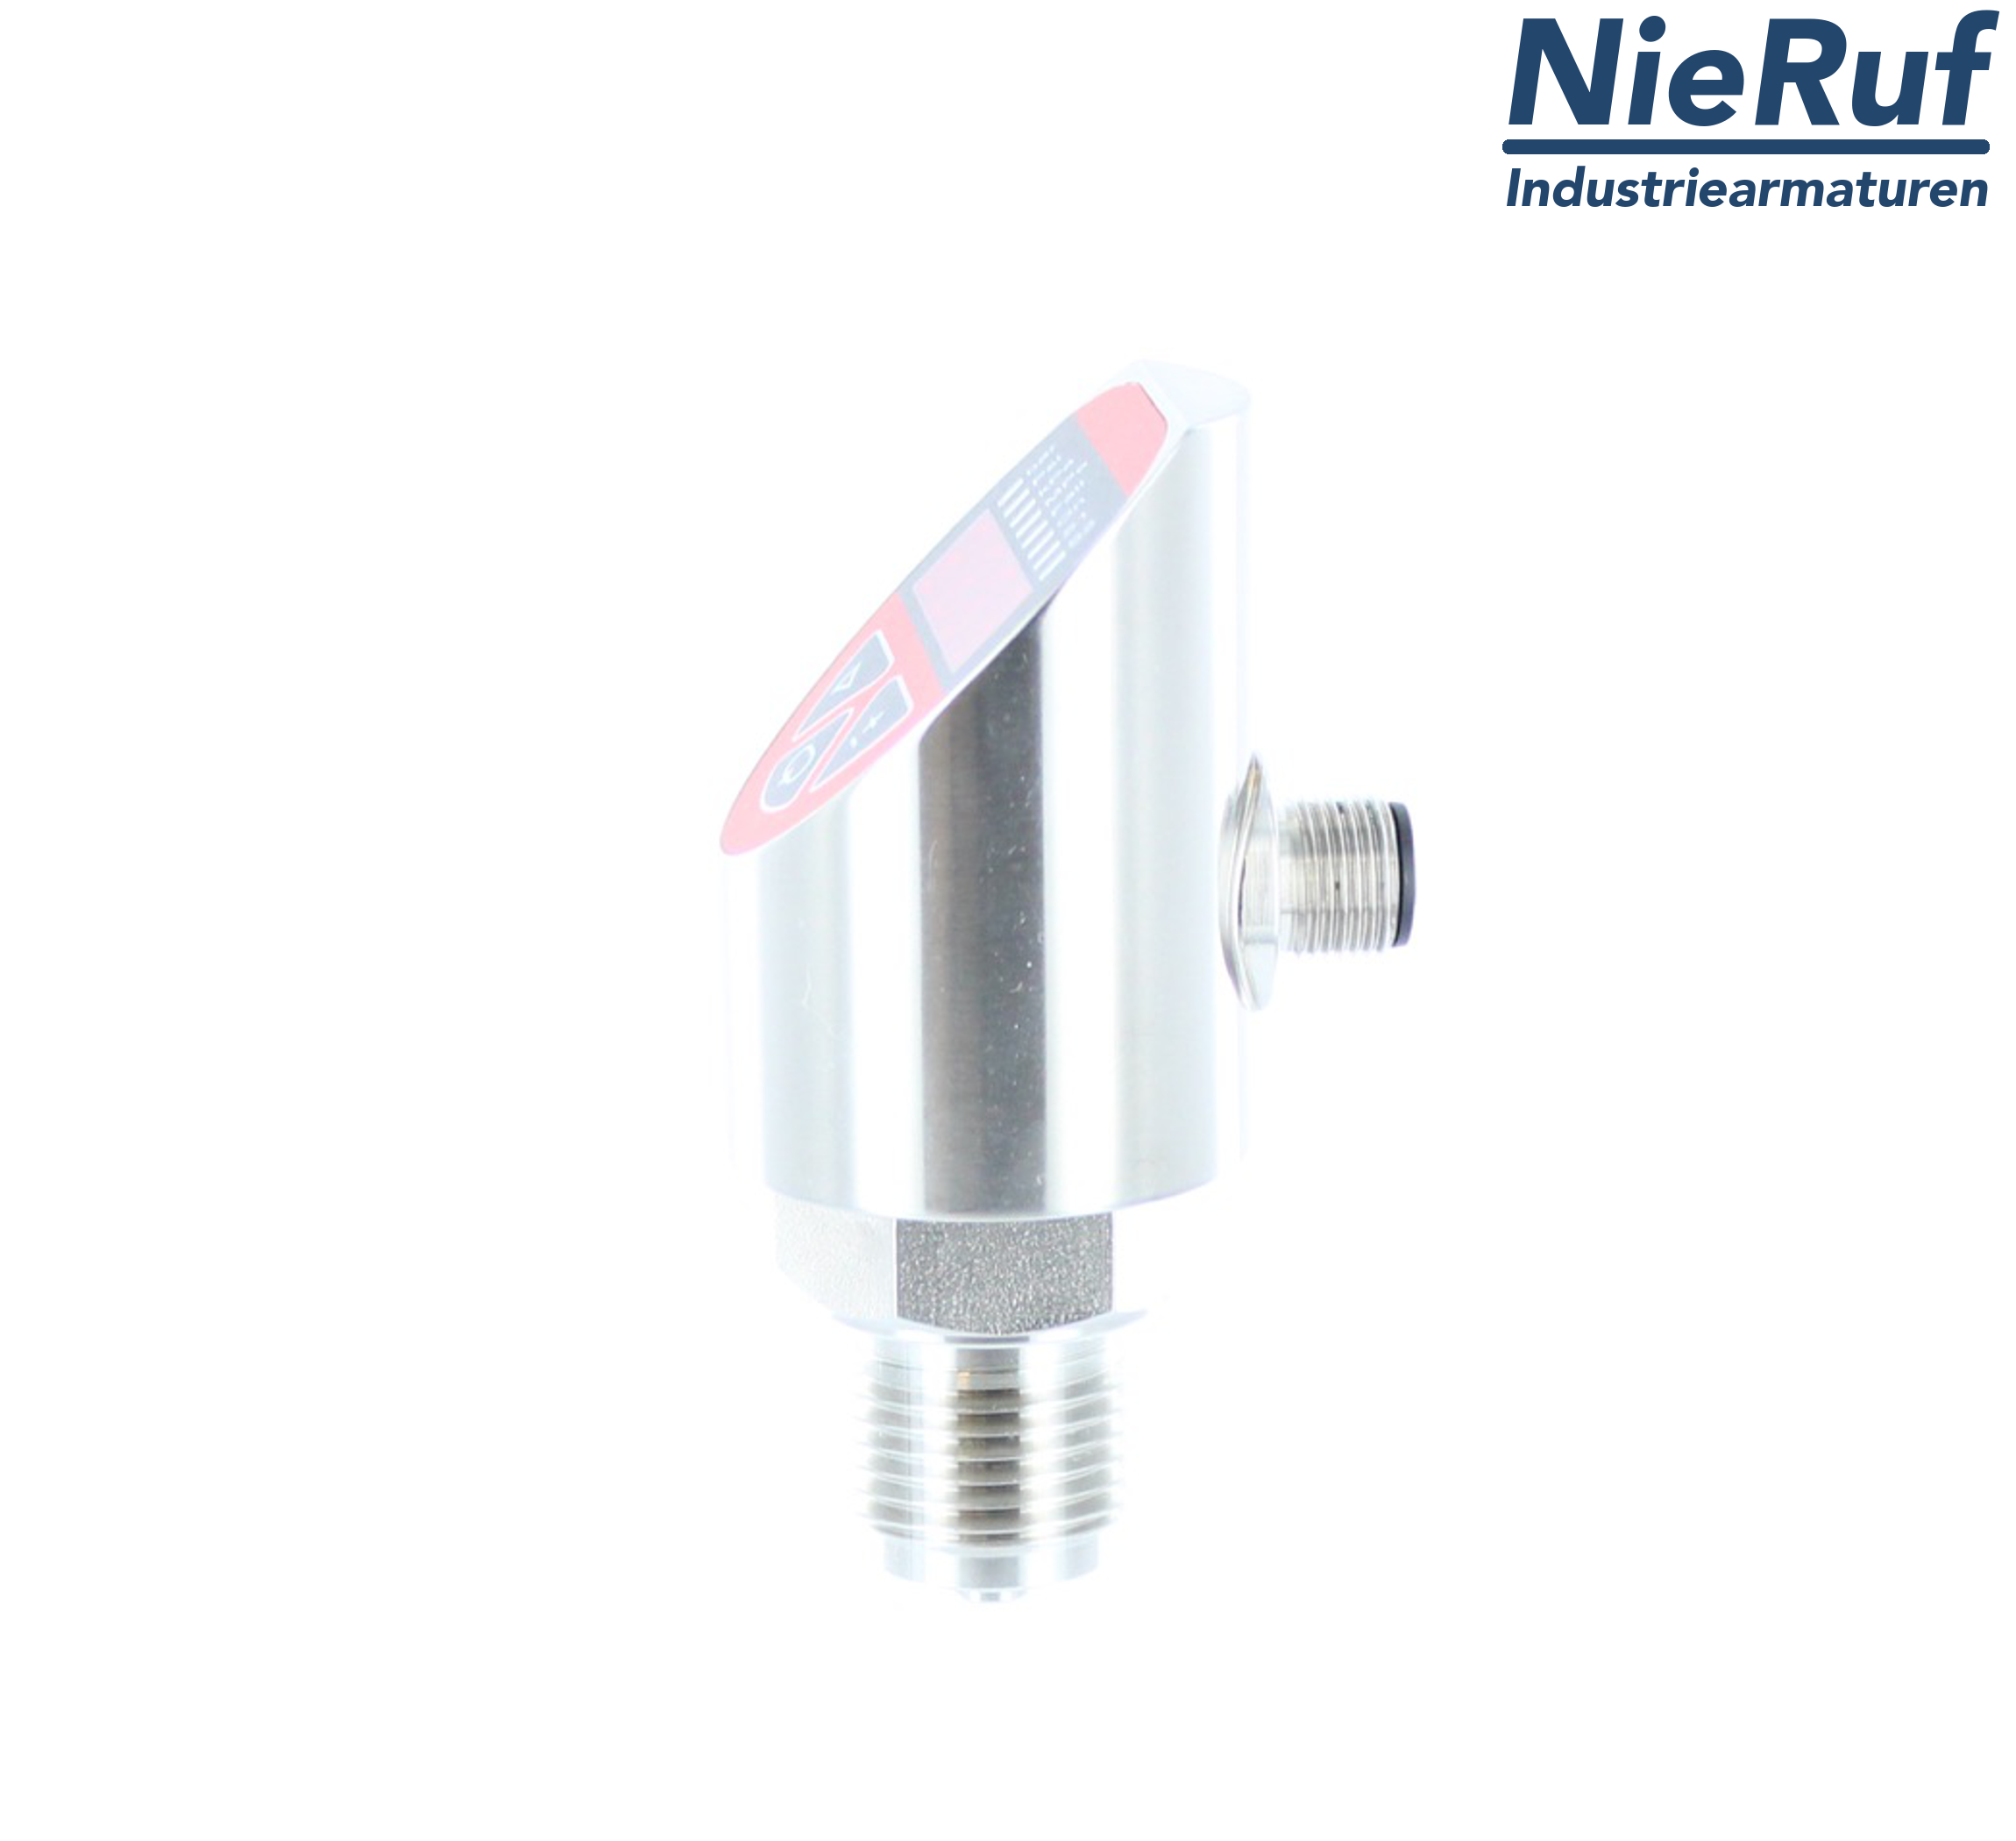 digital pressure sensor G 1/2" B IB 5-wire: 2xPNP, 1x4 - 20mA FPM 0,0 - 400,0 bar